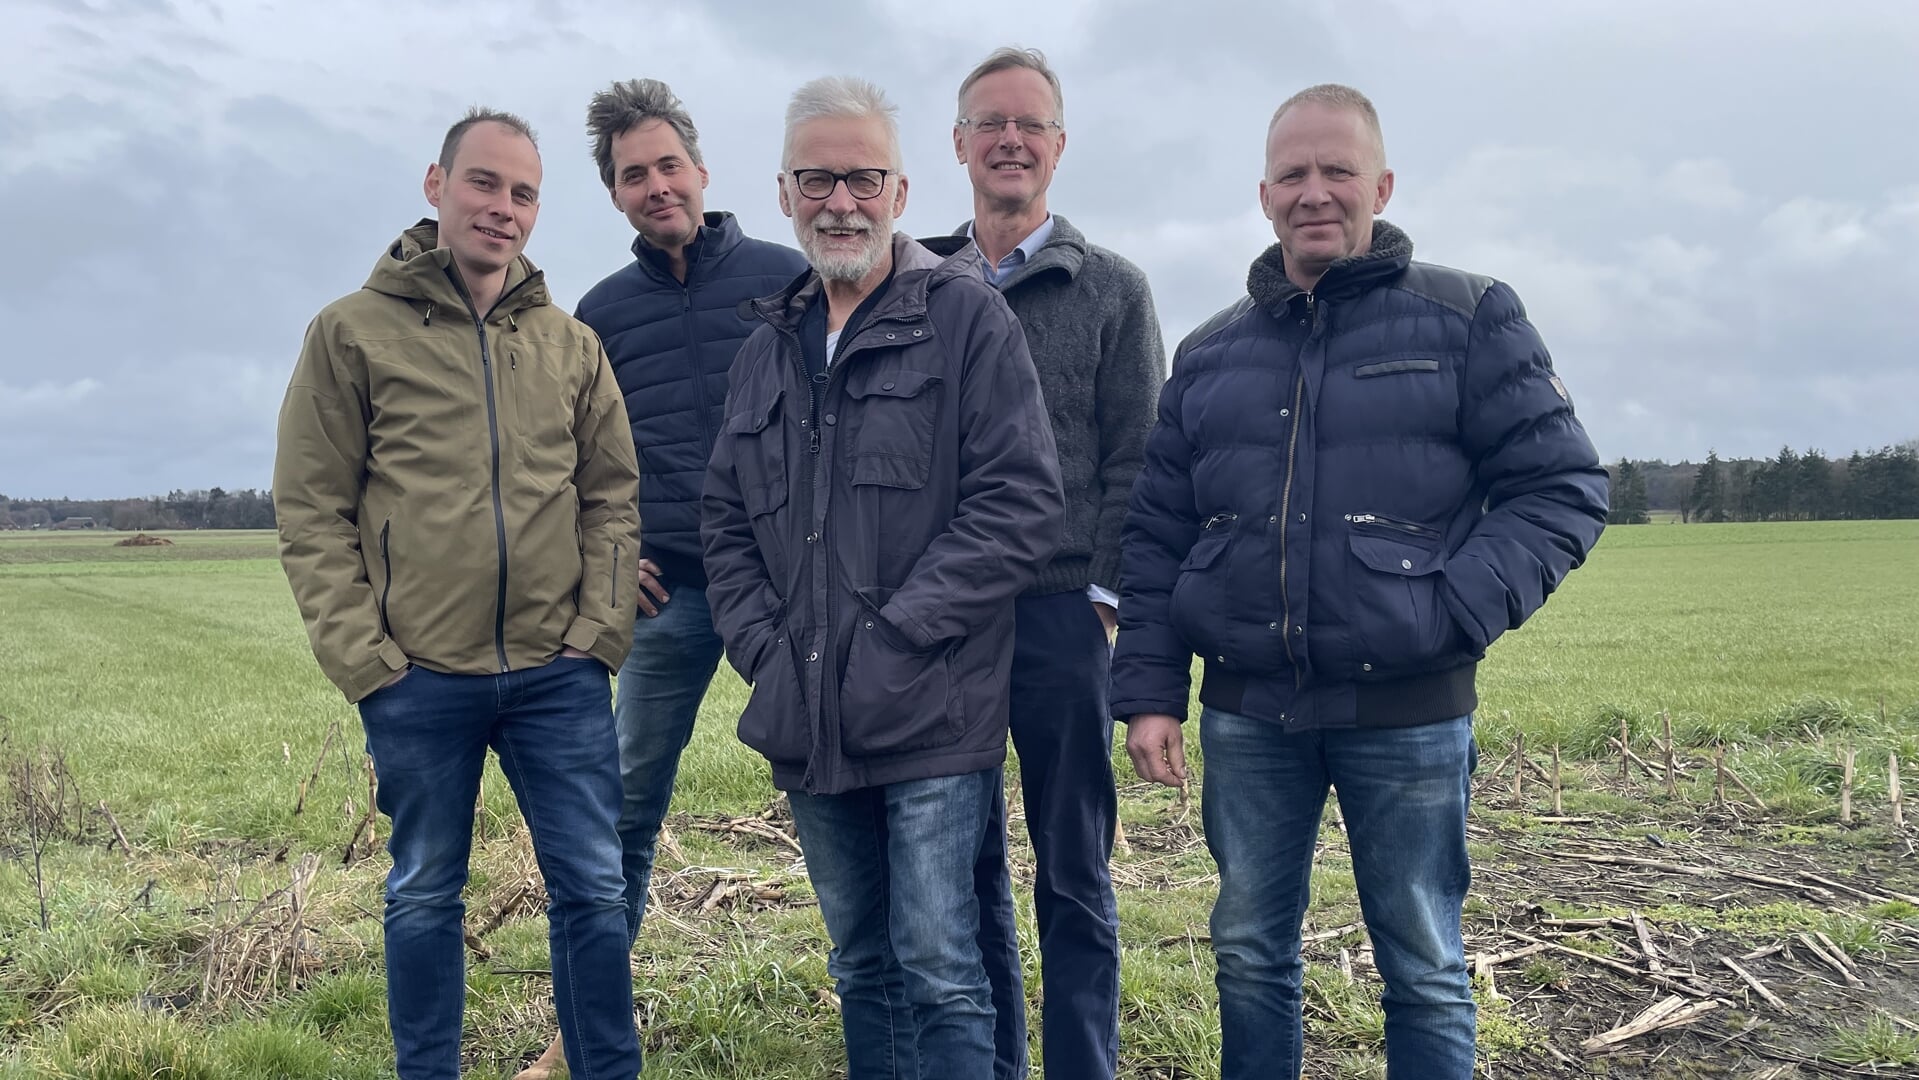 vlnr: Sander Wijgman, Jan Willem Breukink, Martin Bosman, Dirk Jan Schoonman en Andries de Bruin